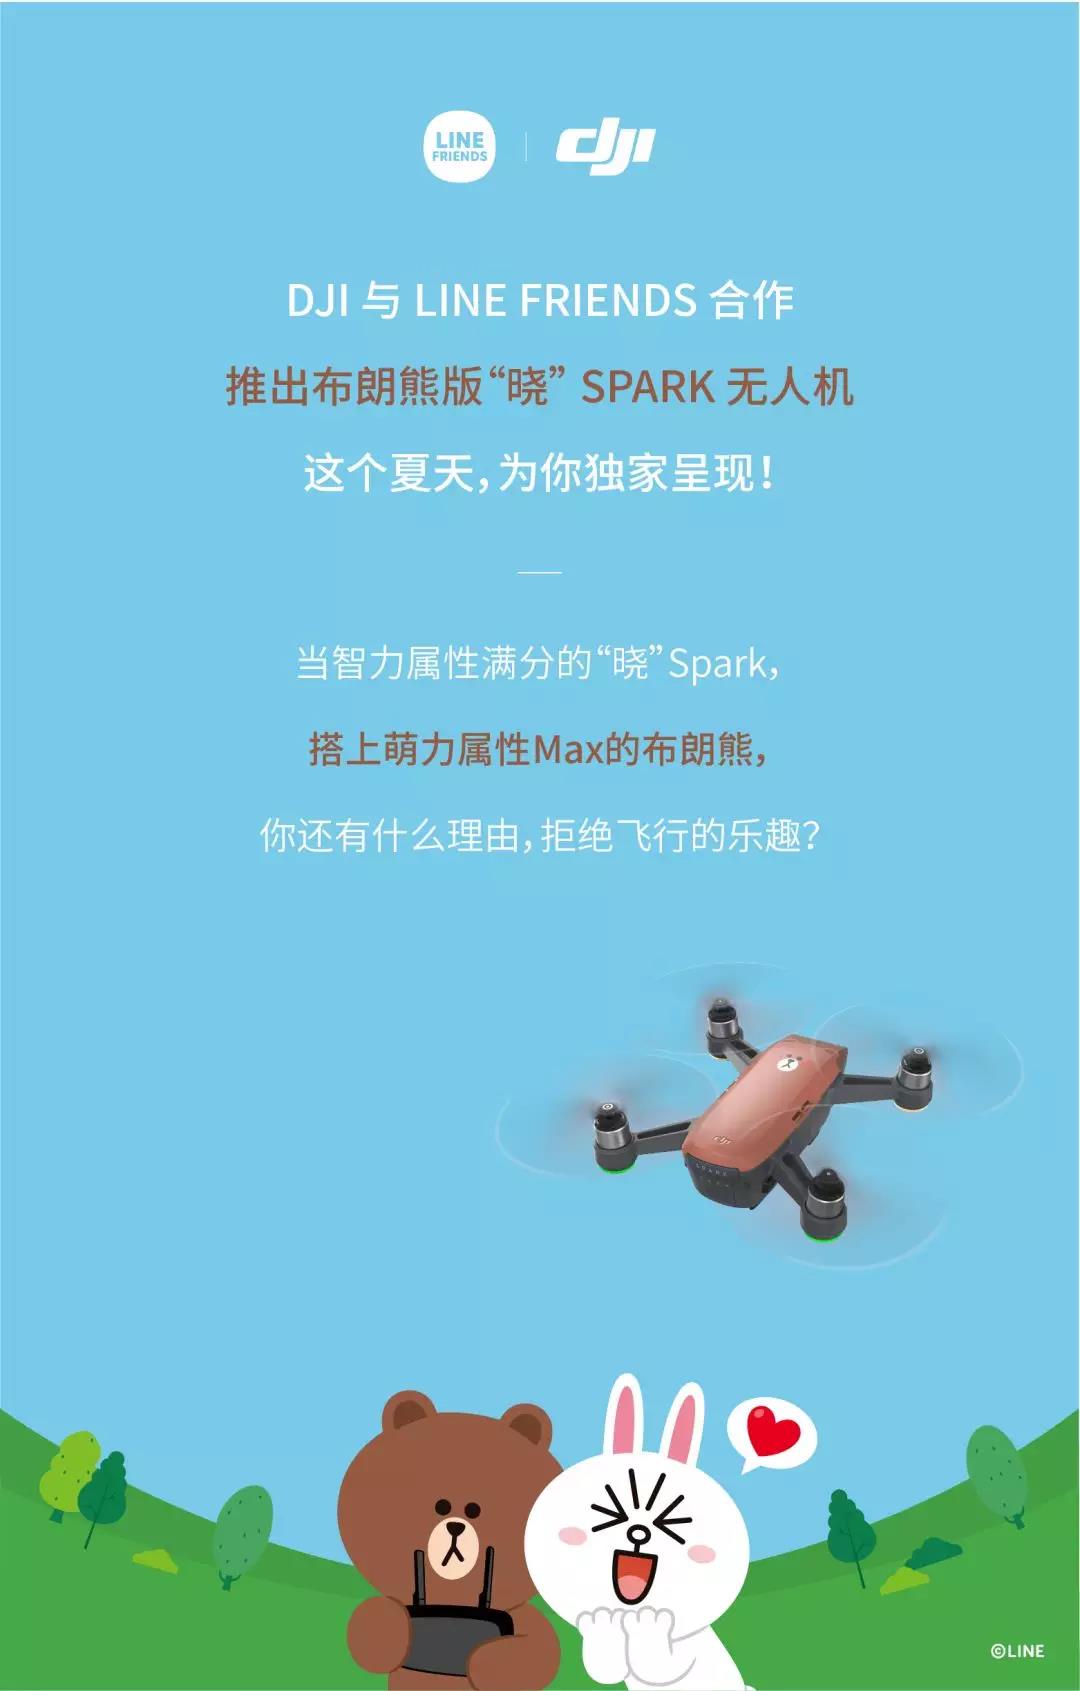 大疆联手LINE FRIENDS玩跨界 史上最萌的布朗熊卡通无人机SPARK